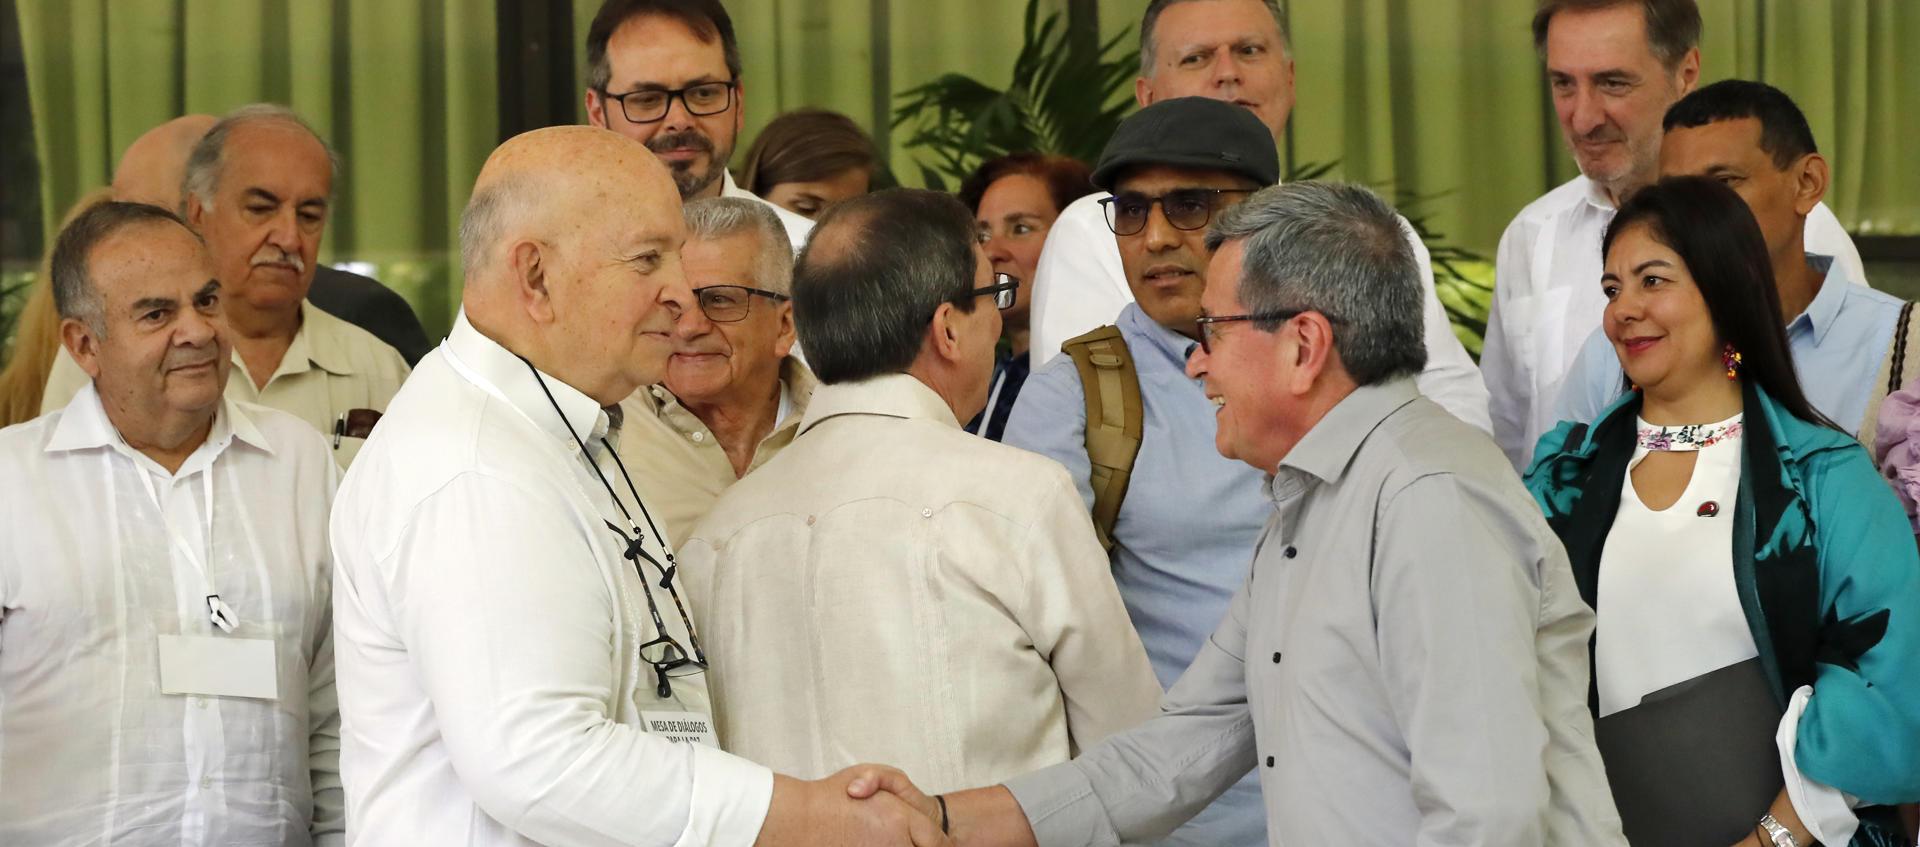 Otty Patiño, delegado del Gobierno Colombiano y el negociador jefe del ELN,  'Pablo Beltrán', en el tercer ciclo de los diálogos de Paz entre el Gobierno 